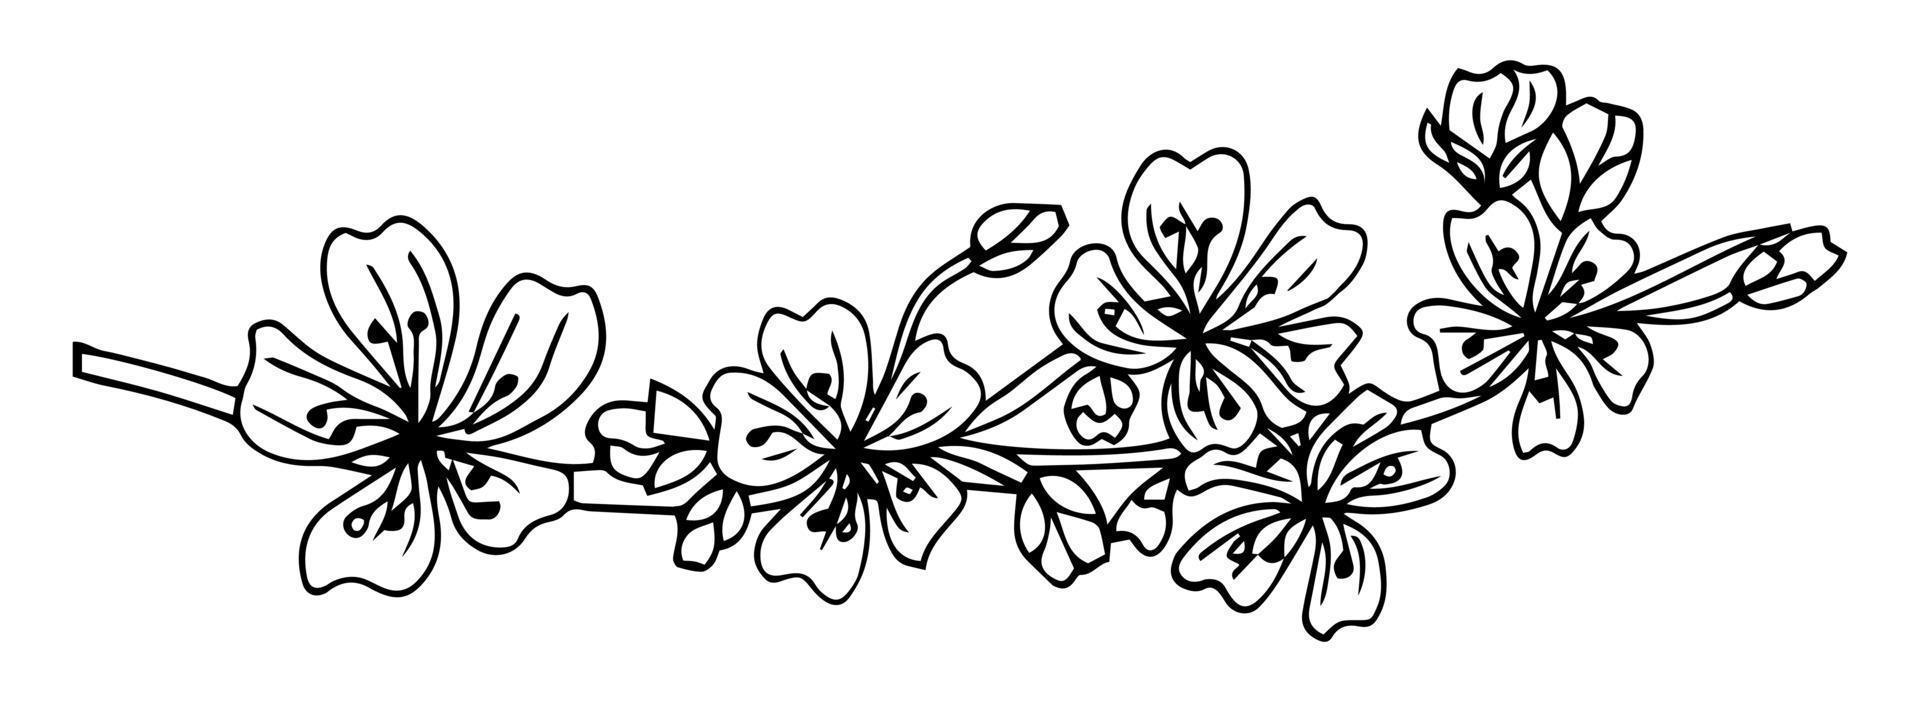 bloemen botanie schets collectie. appelboomtak met bloemenpatronen. handgetekende botanische illustraties. vector